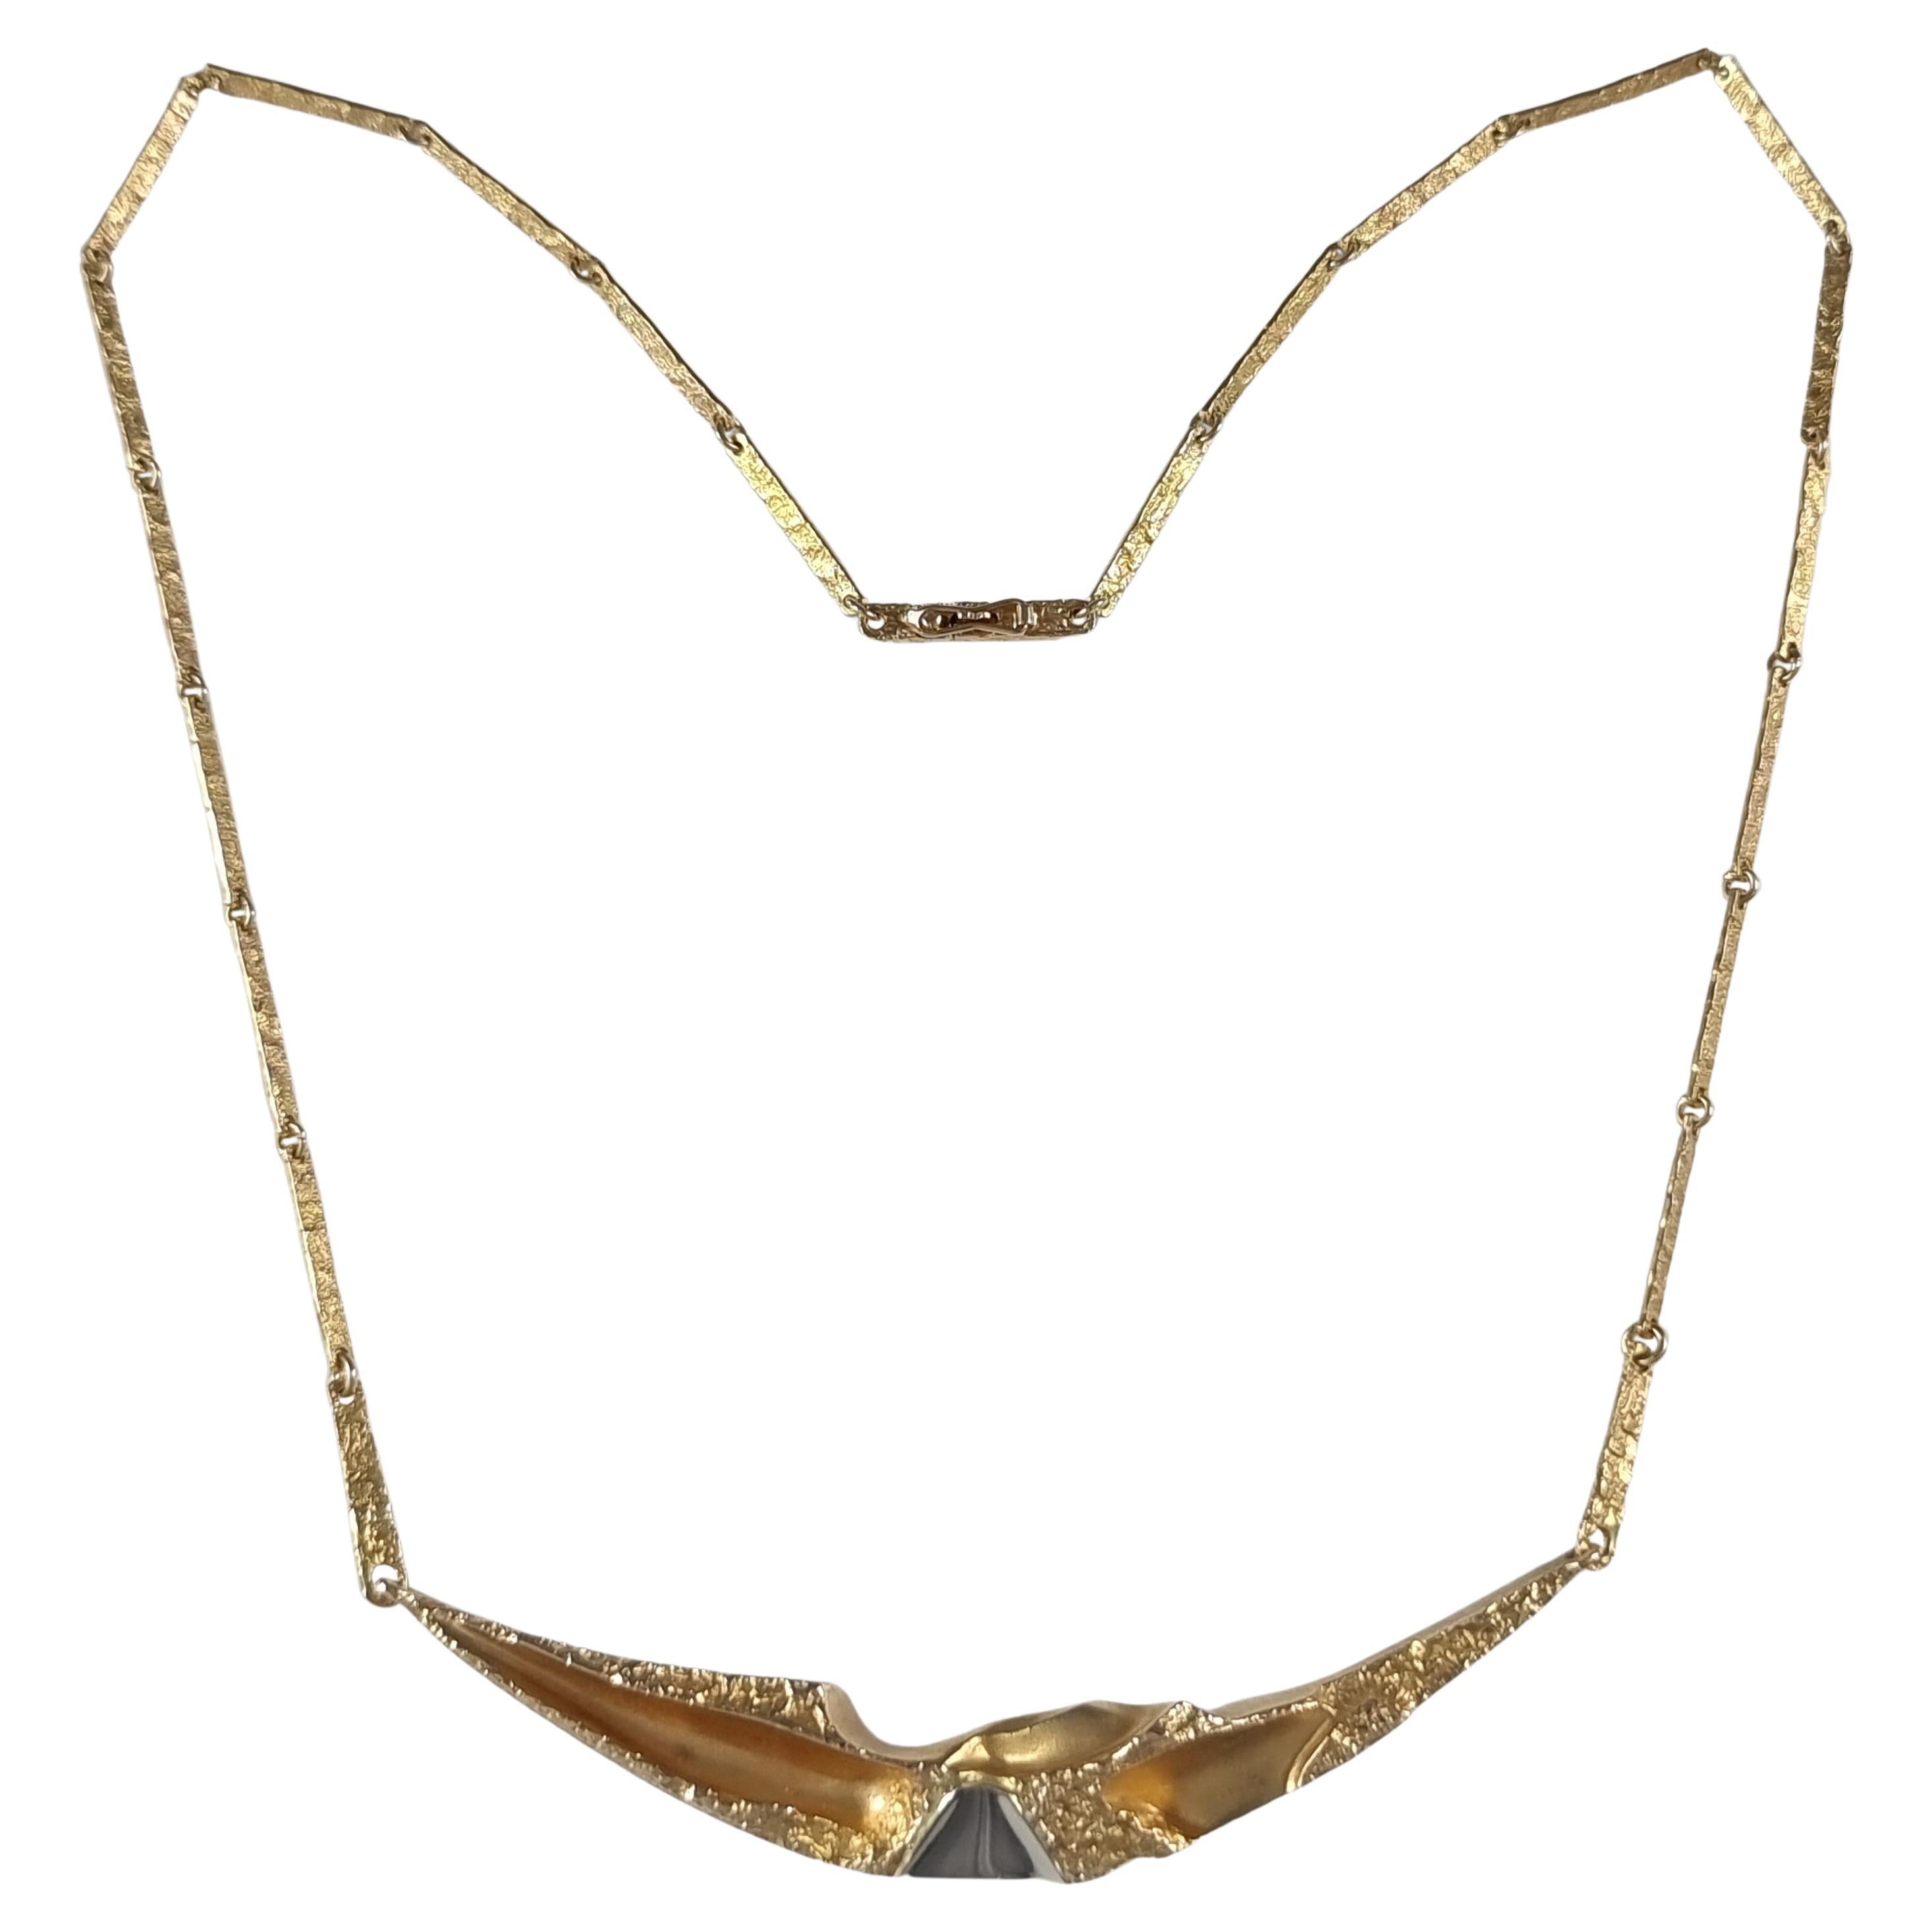 Lapponia 14ct Gold Necklace, Björn Weckström, 1988